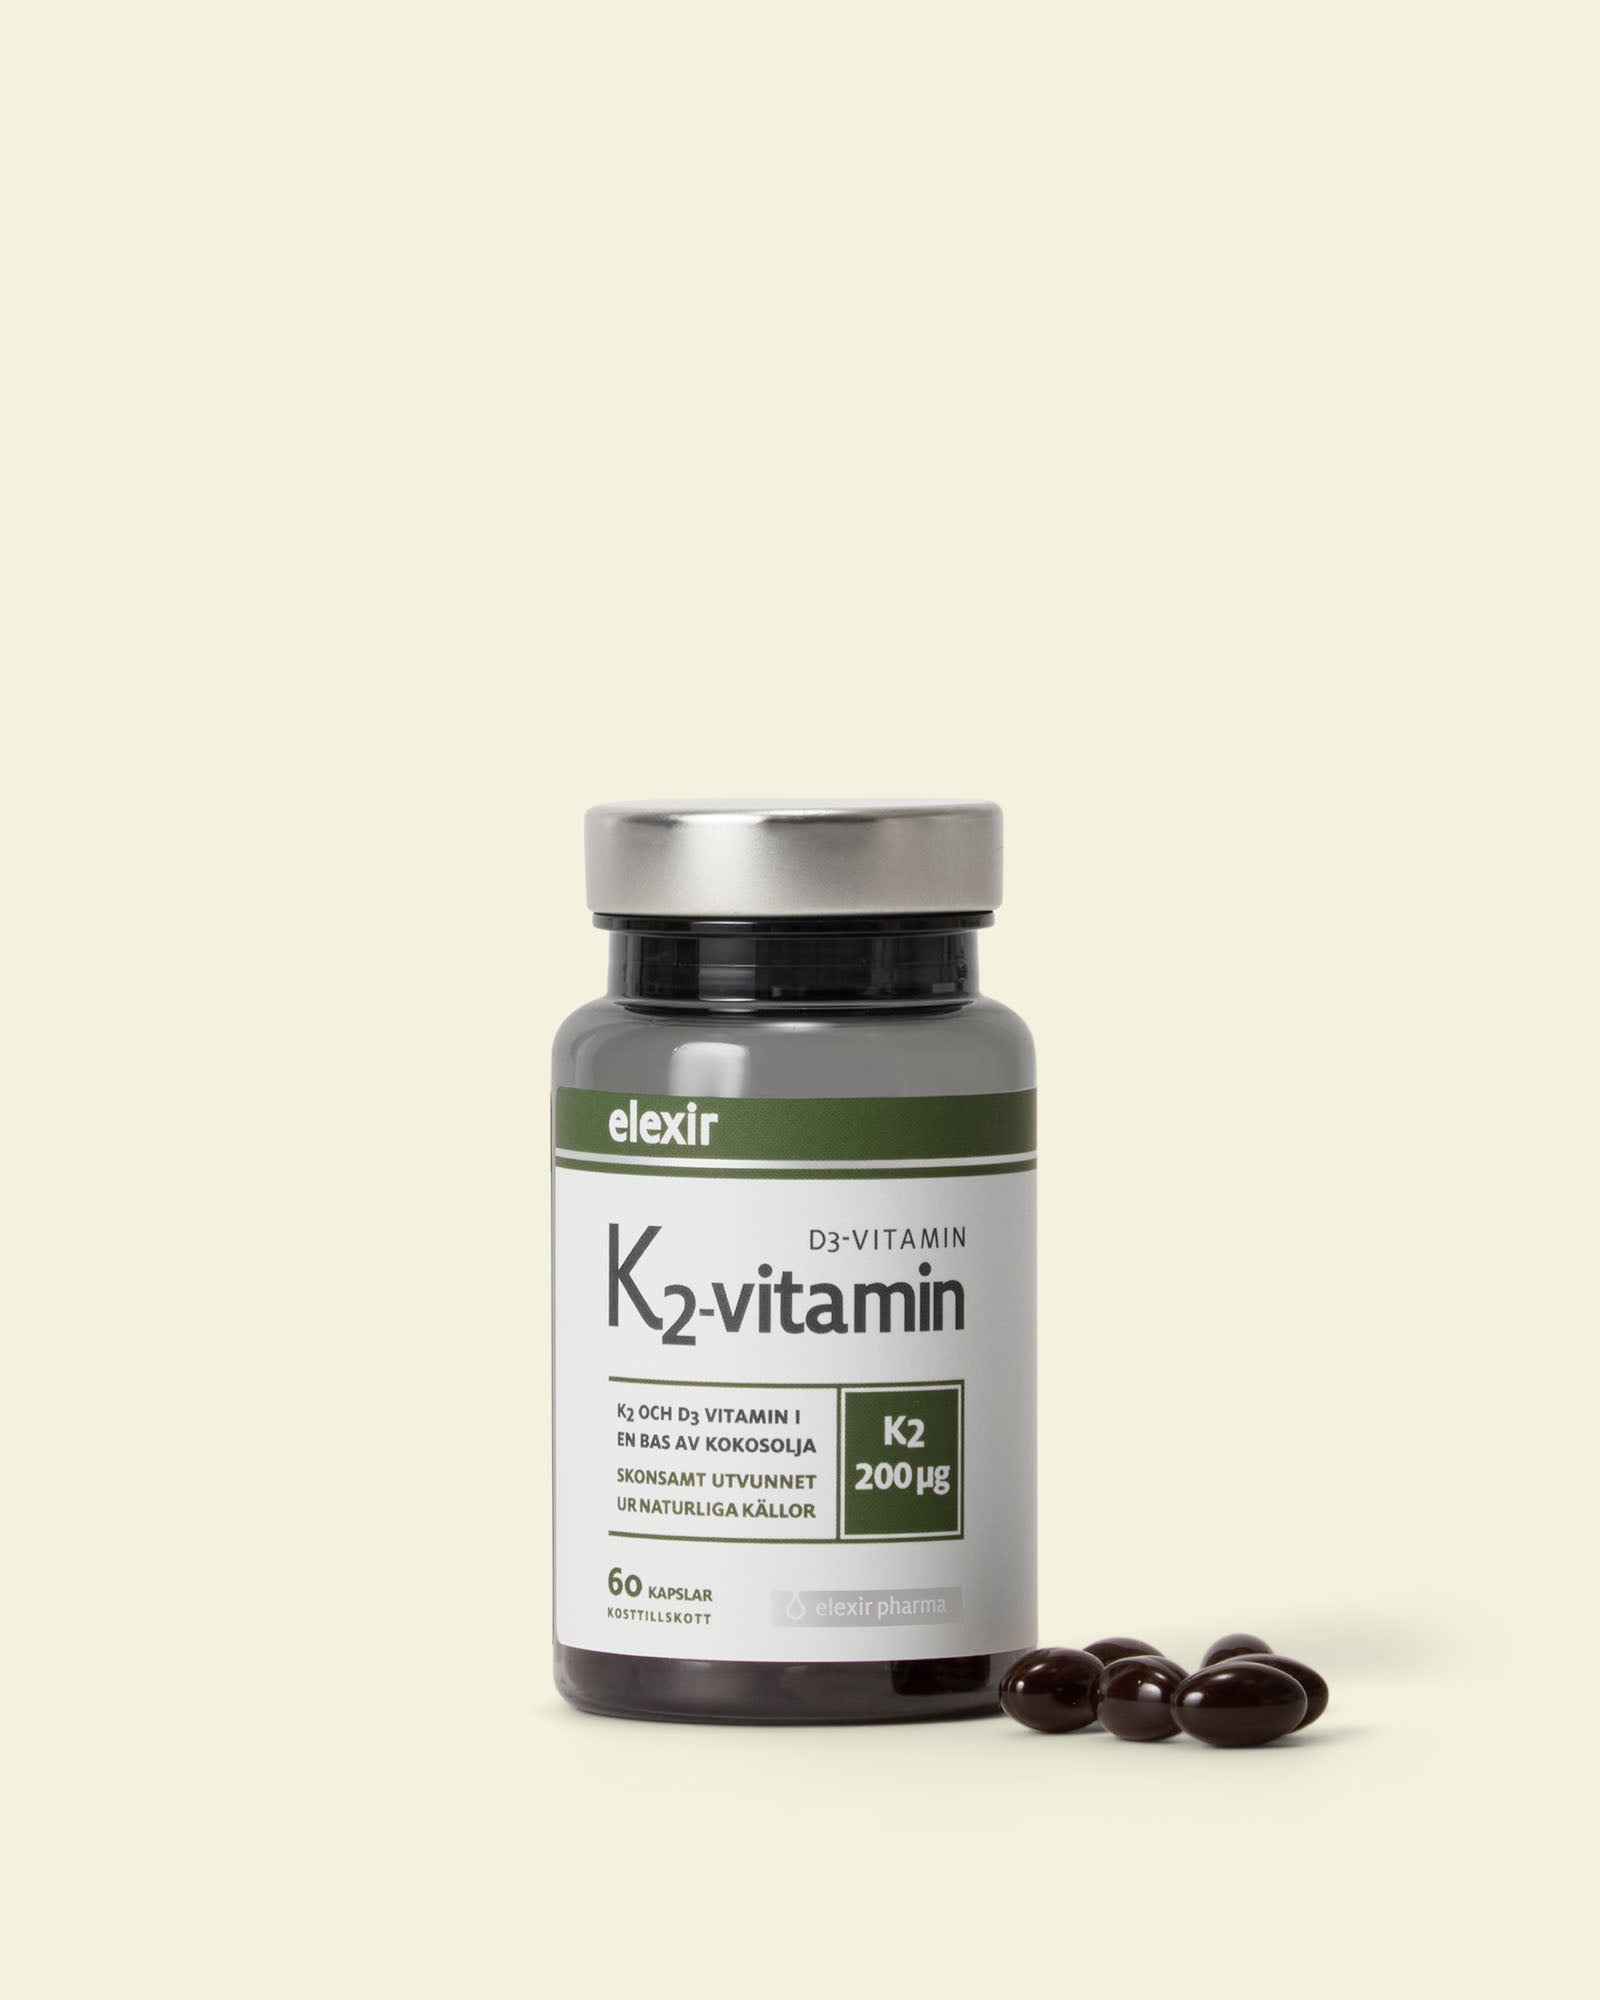 K2 & D3-vitamin image